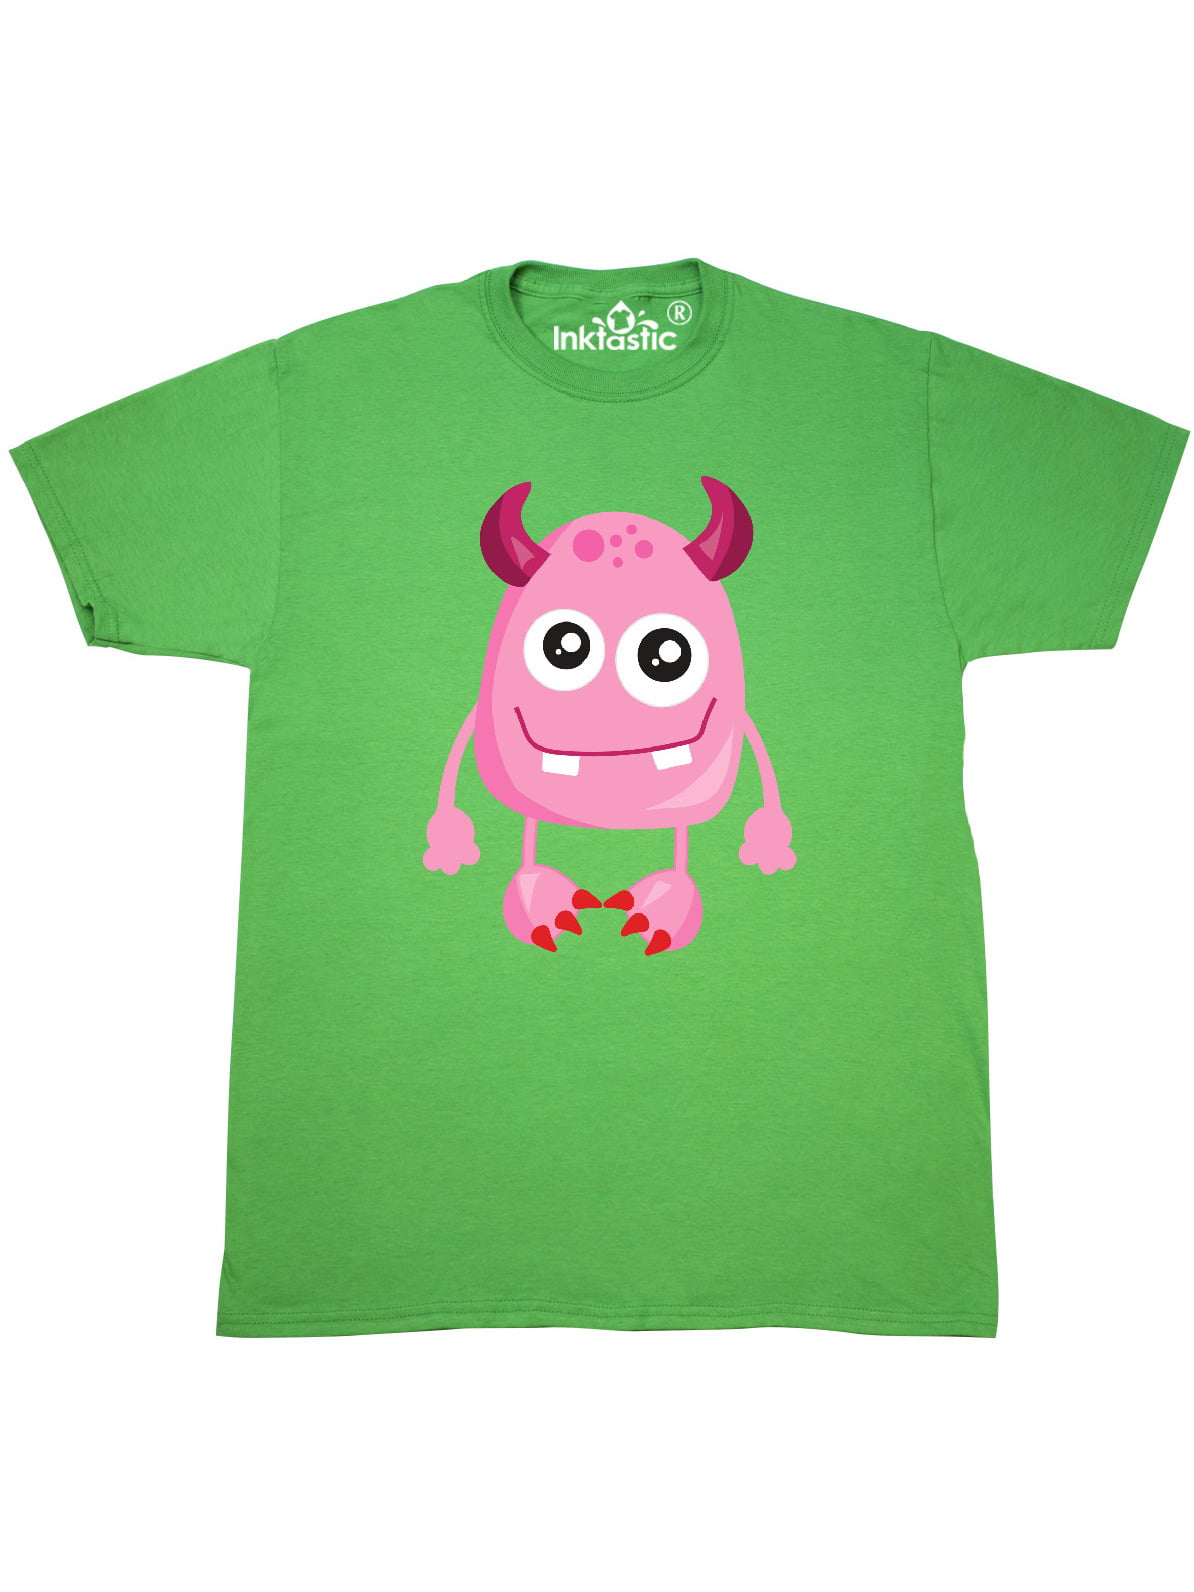 INKtastic - Cute Monster, Smiling Monster, Pink Monster, Horns T-Shirt ...